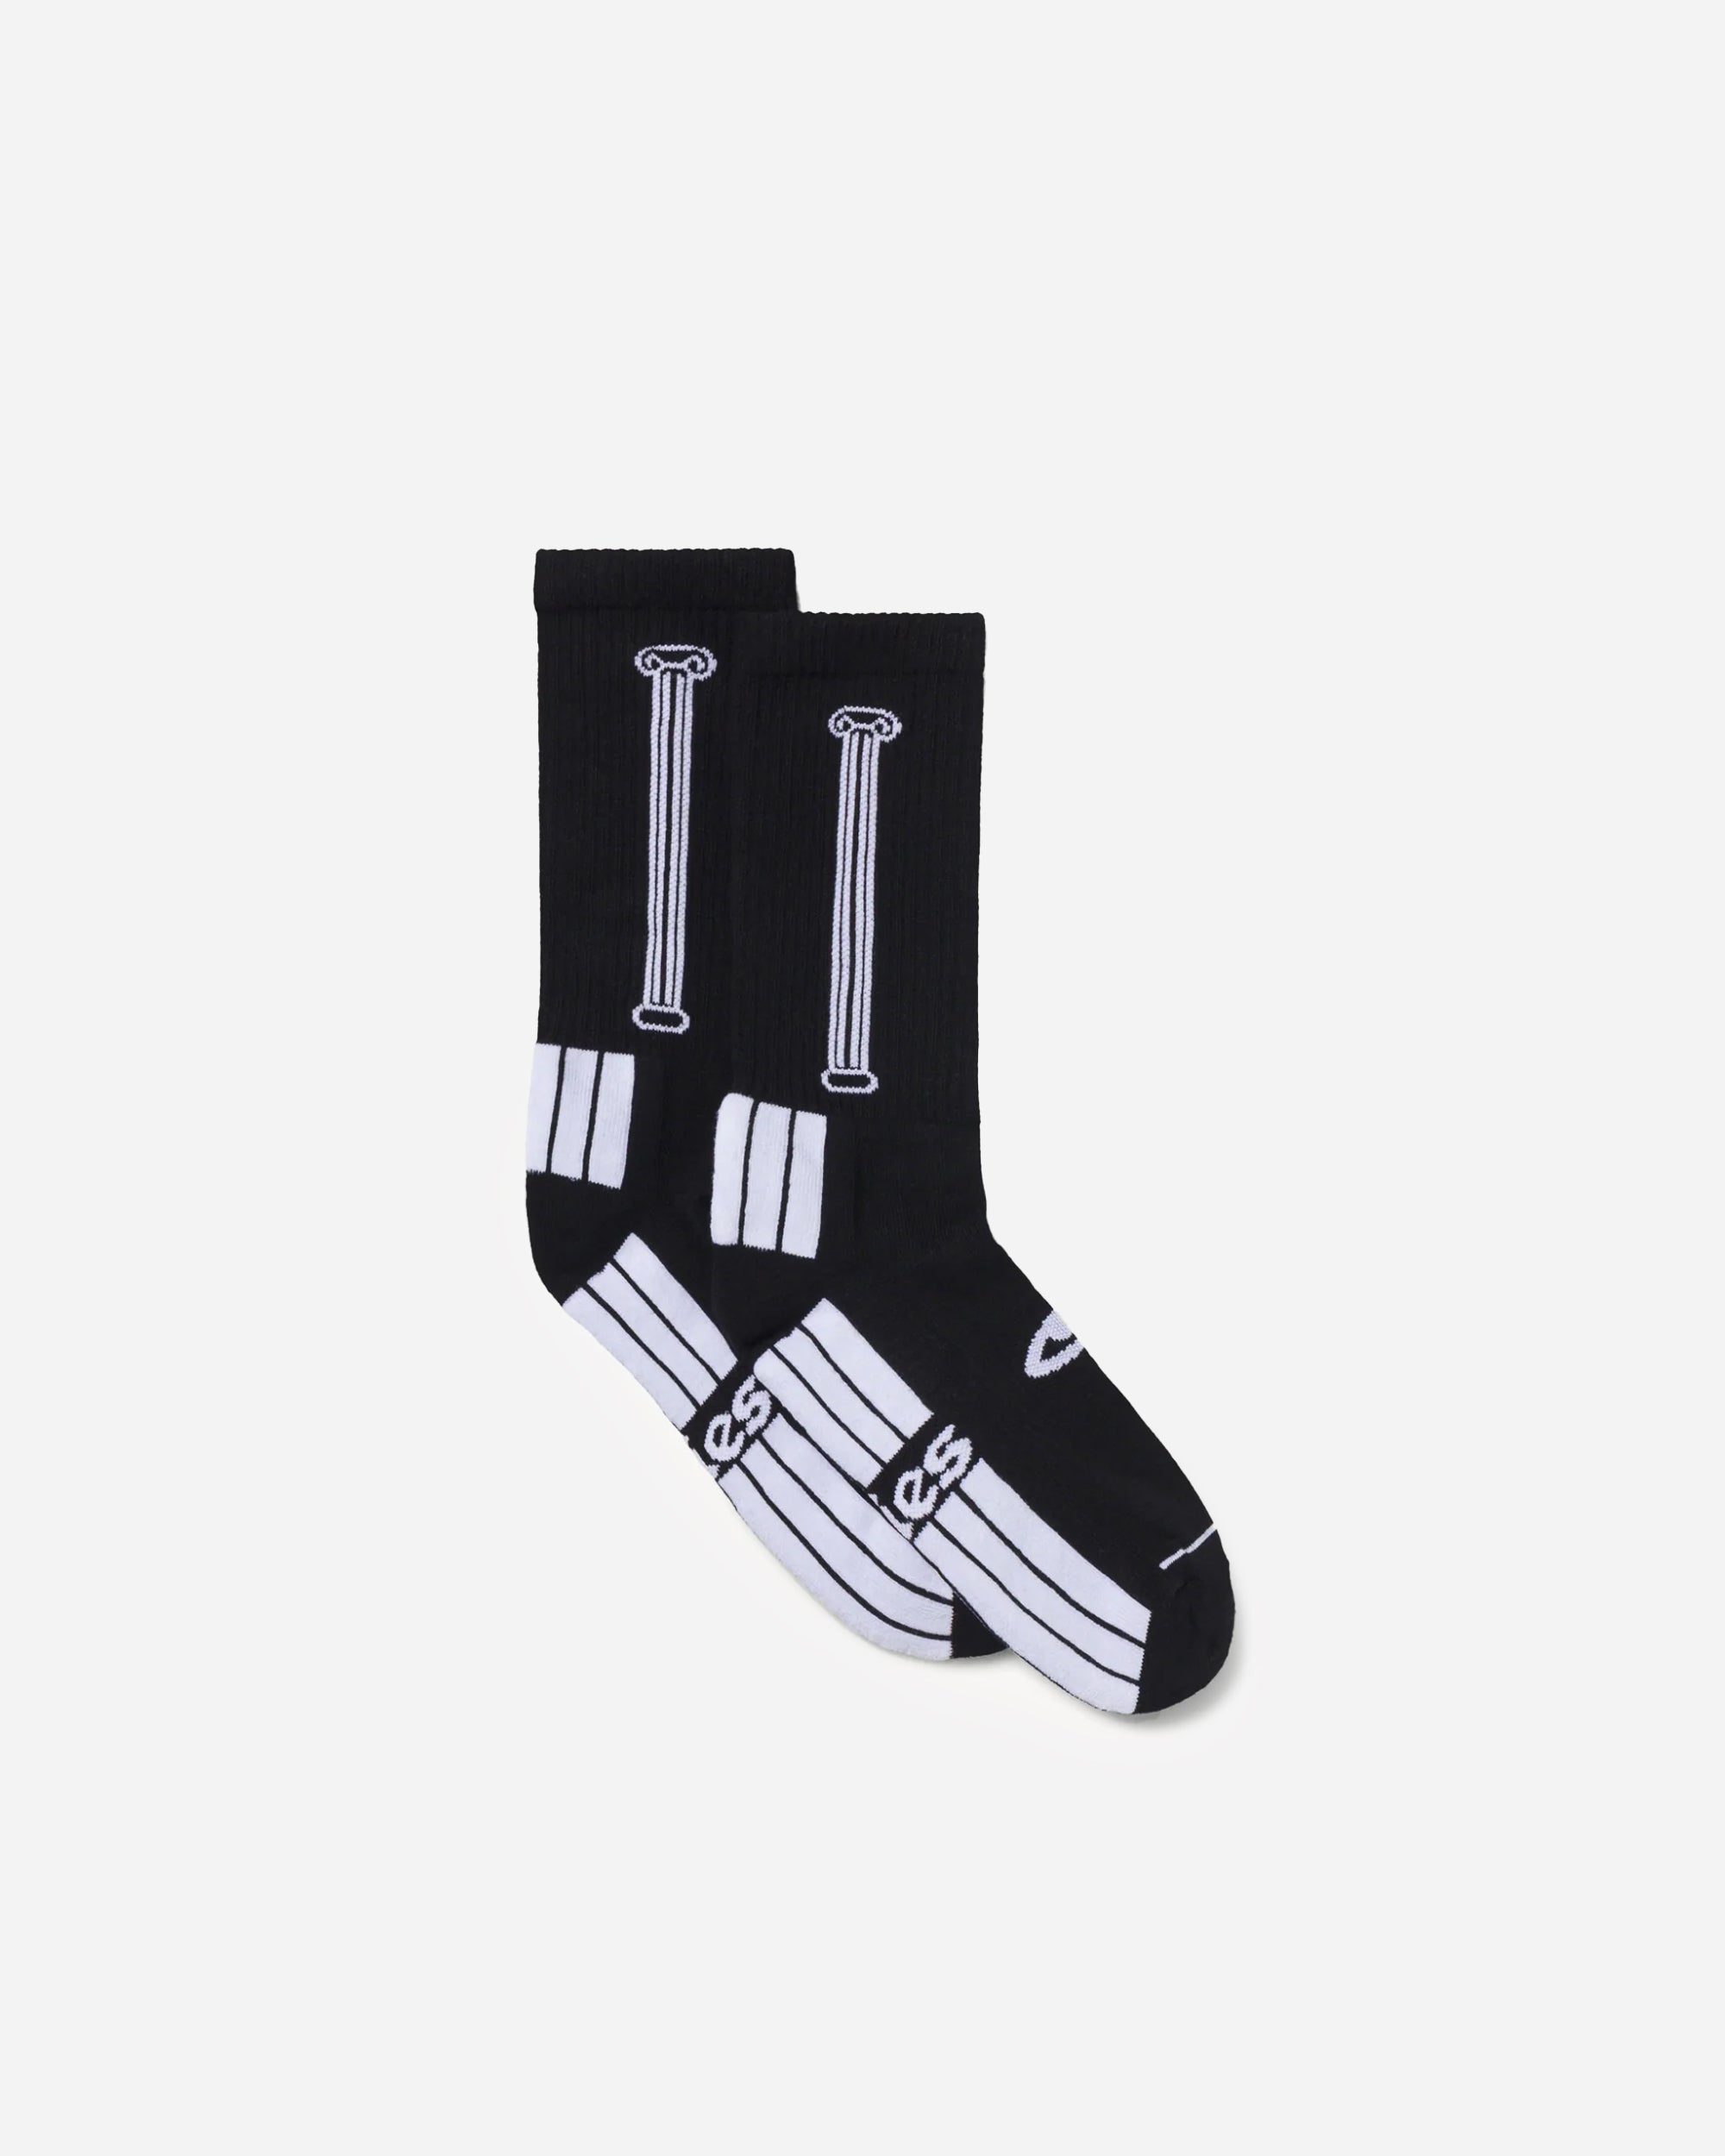 ARIES Column Socks Black   RUAR00049-BLK